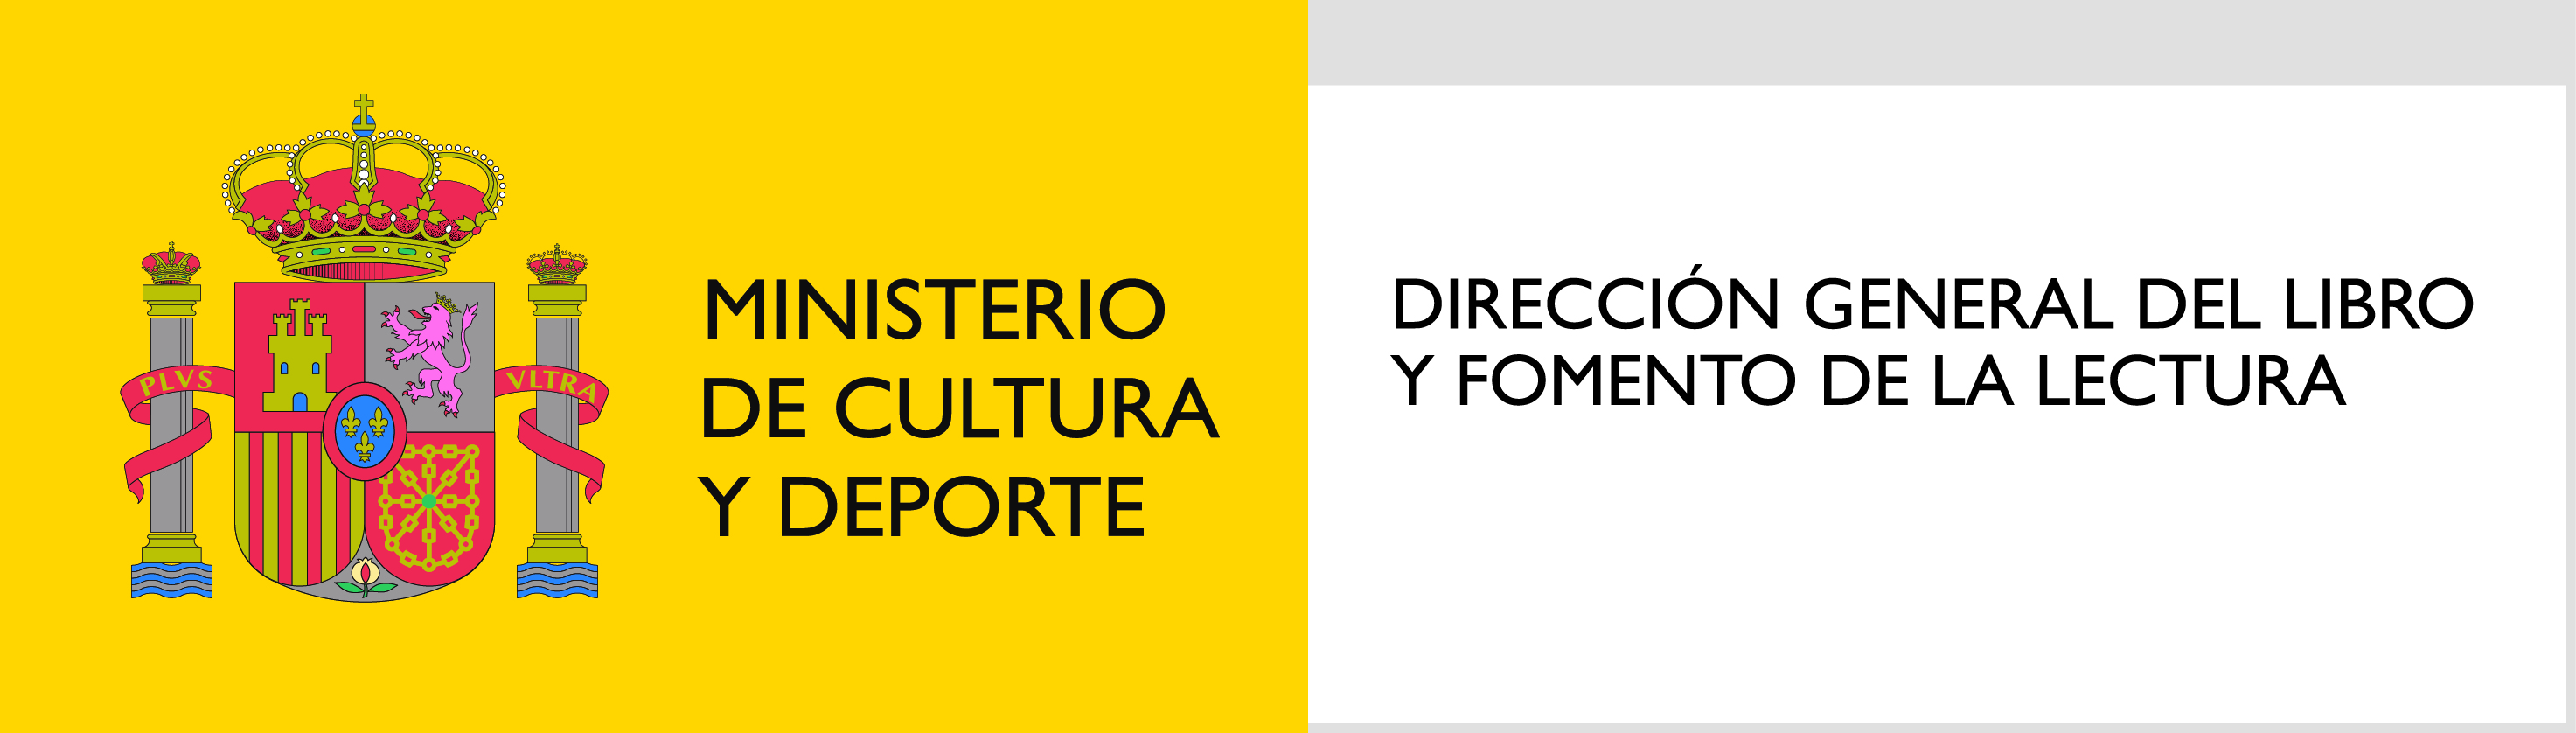 Logotipo del Ministerio de Educación, Cultura y Deporte